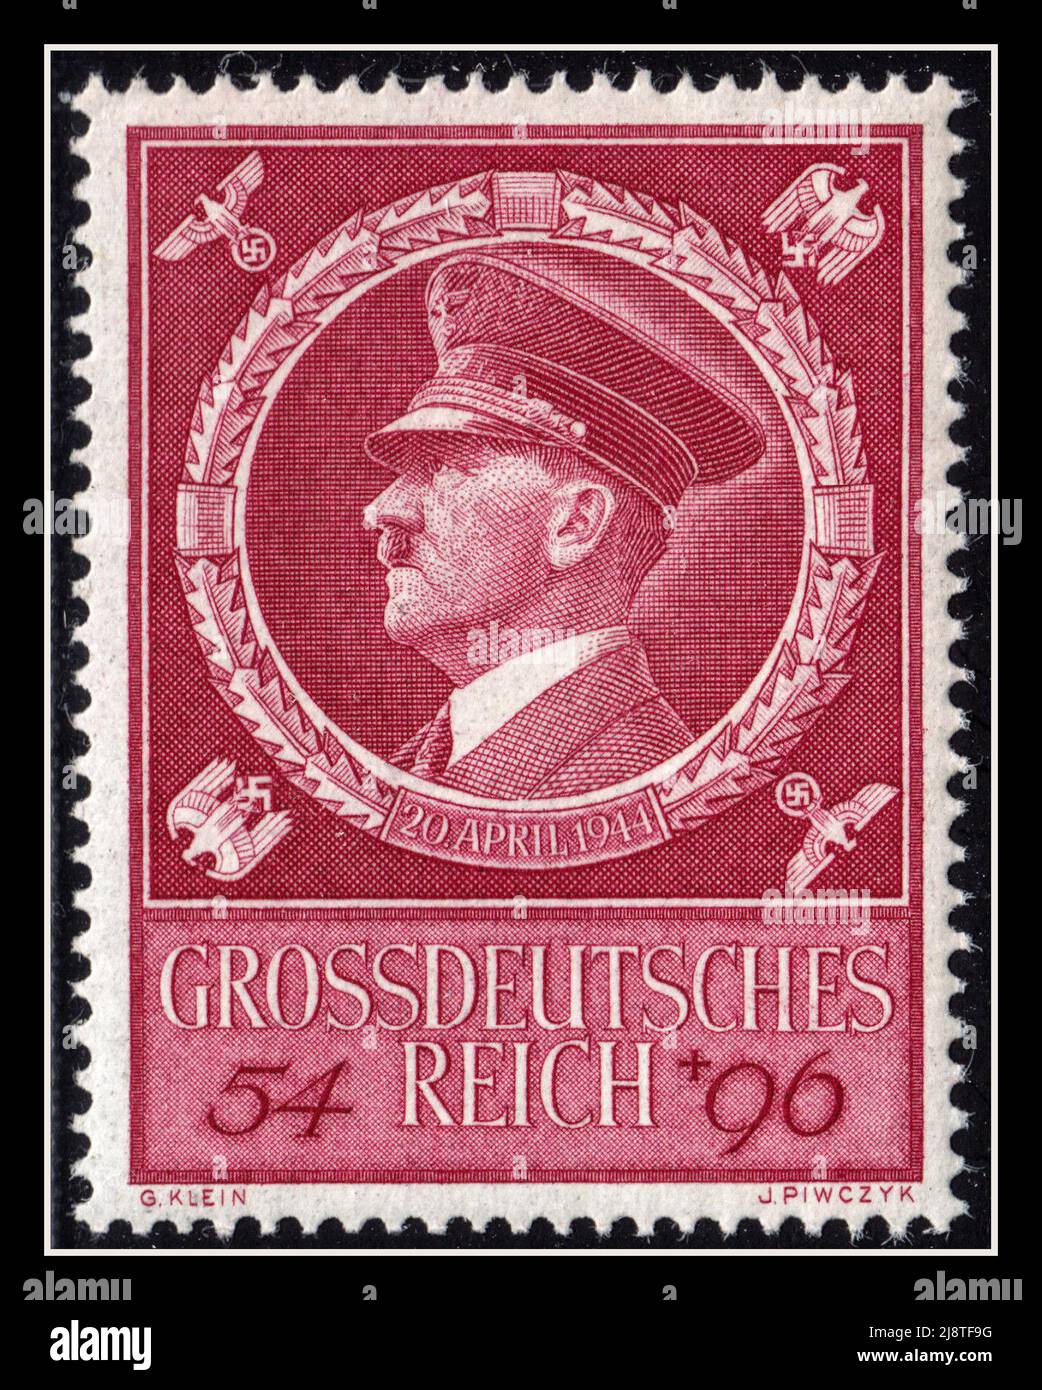 Timbre d'anniversaire d'Adolf Hitler timbre-poste commémoratif pour l'anniversaire du nazi Führer Date 20th avril 1944 Banque D'Images